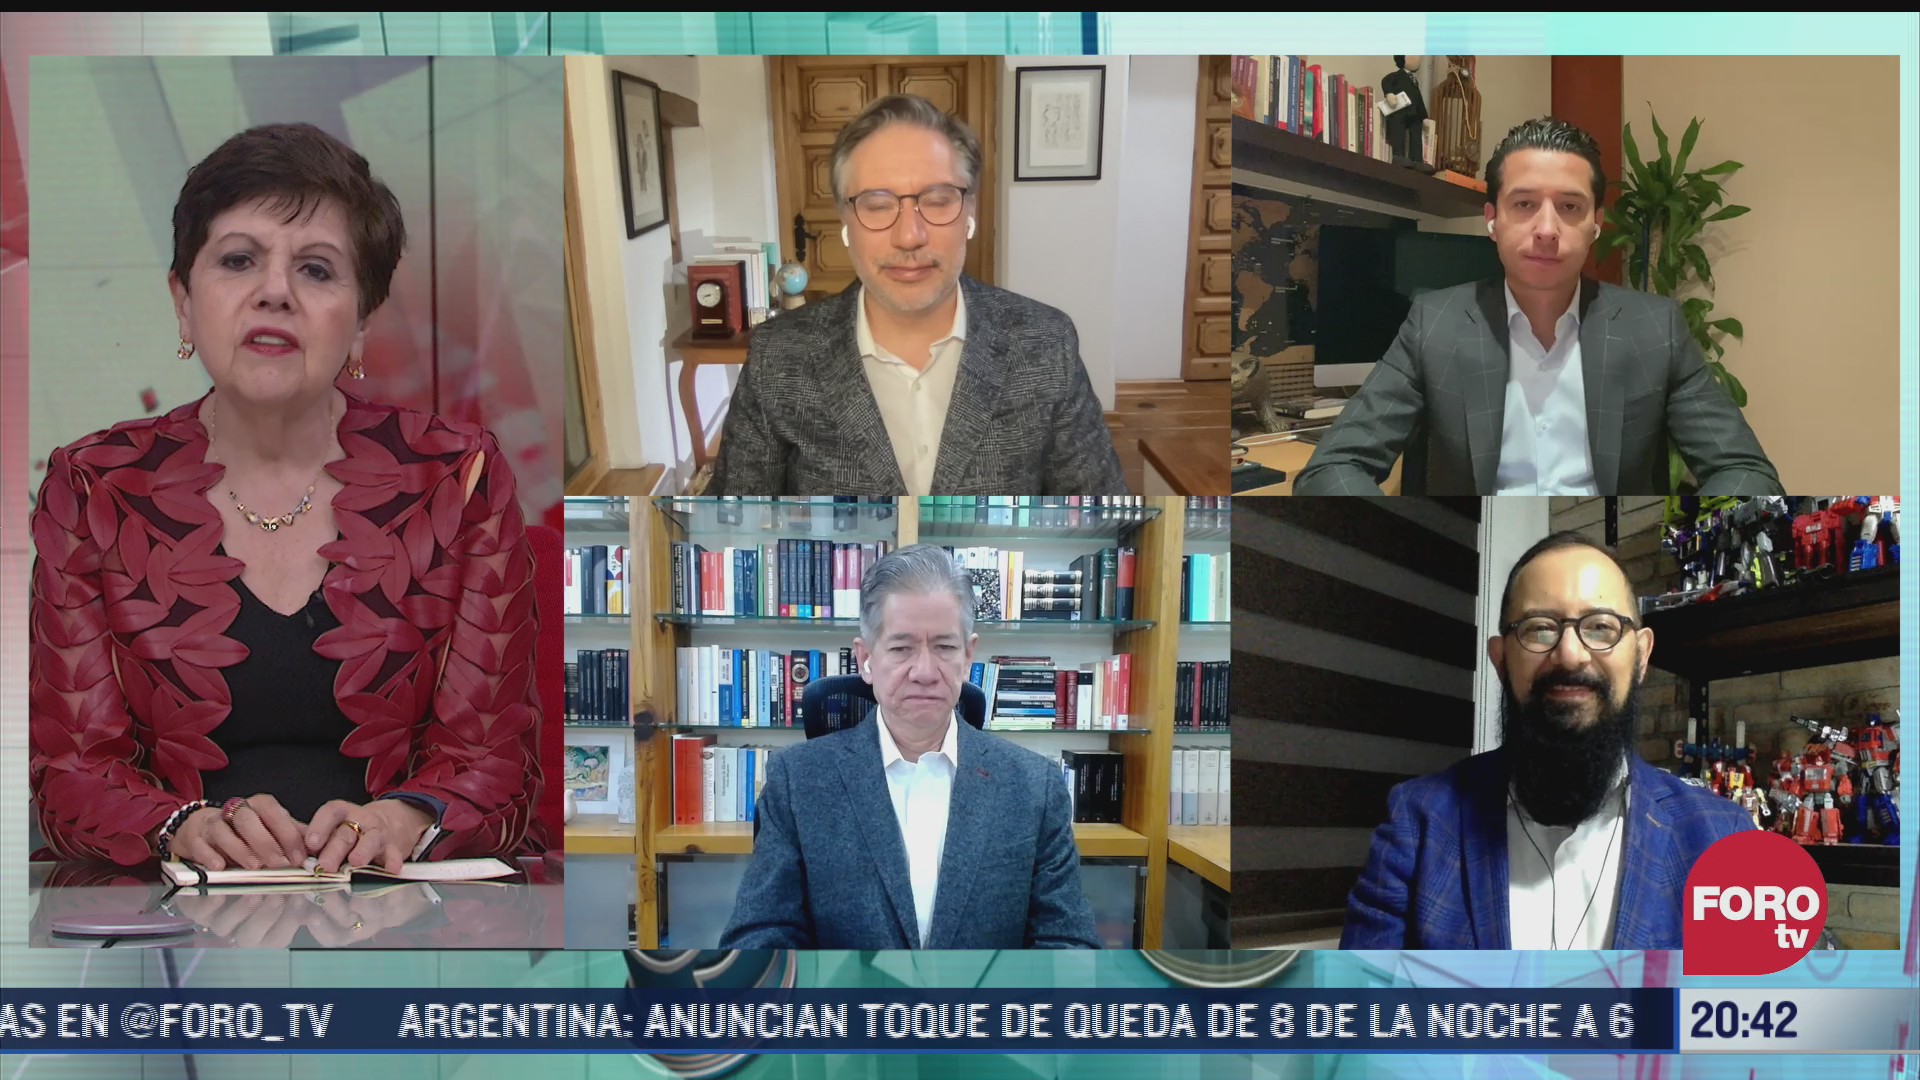 union de televisa y univision la mejor noticia de la tv mexicana alvaro cueva